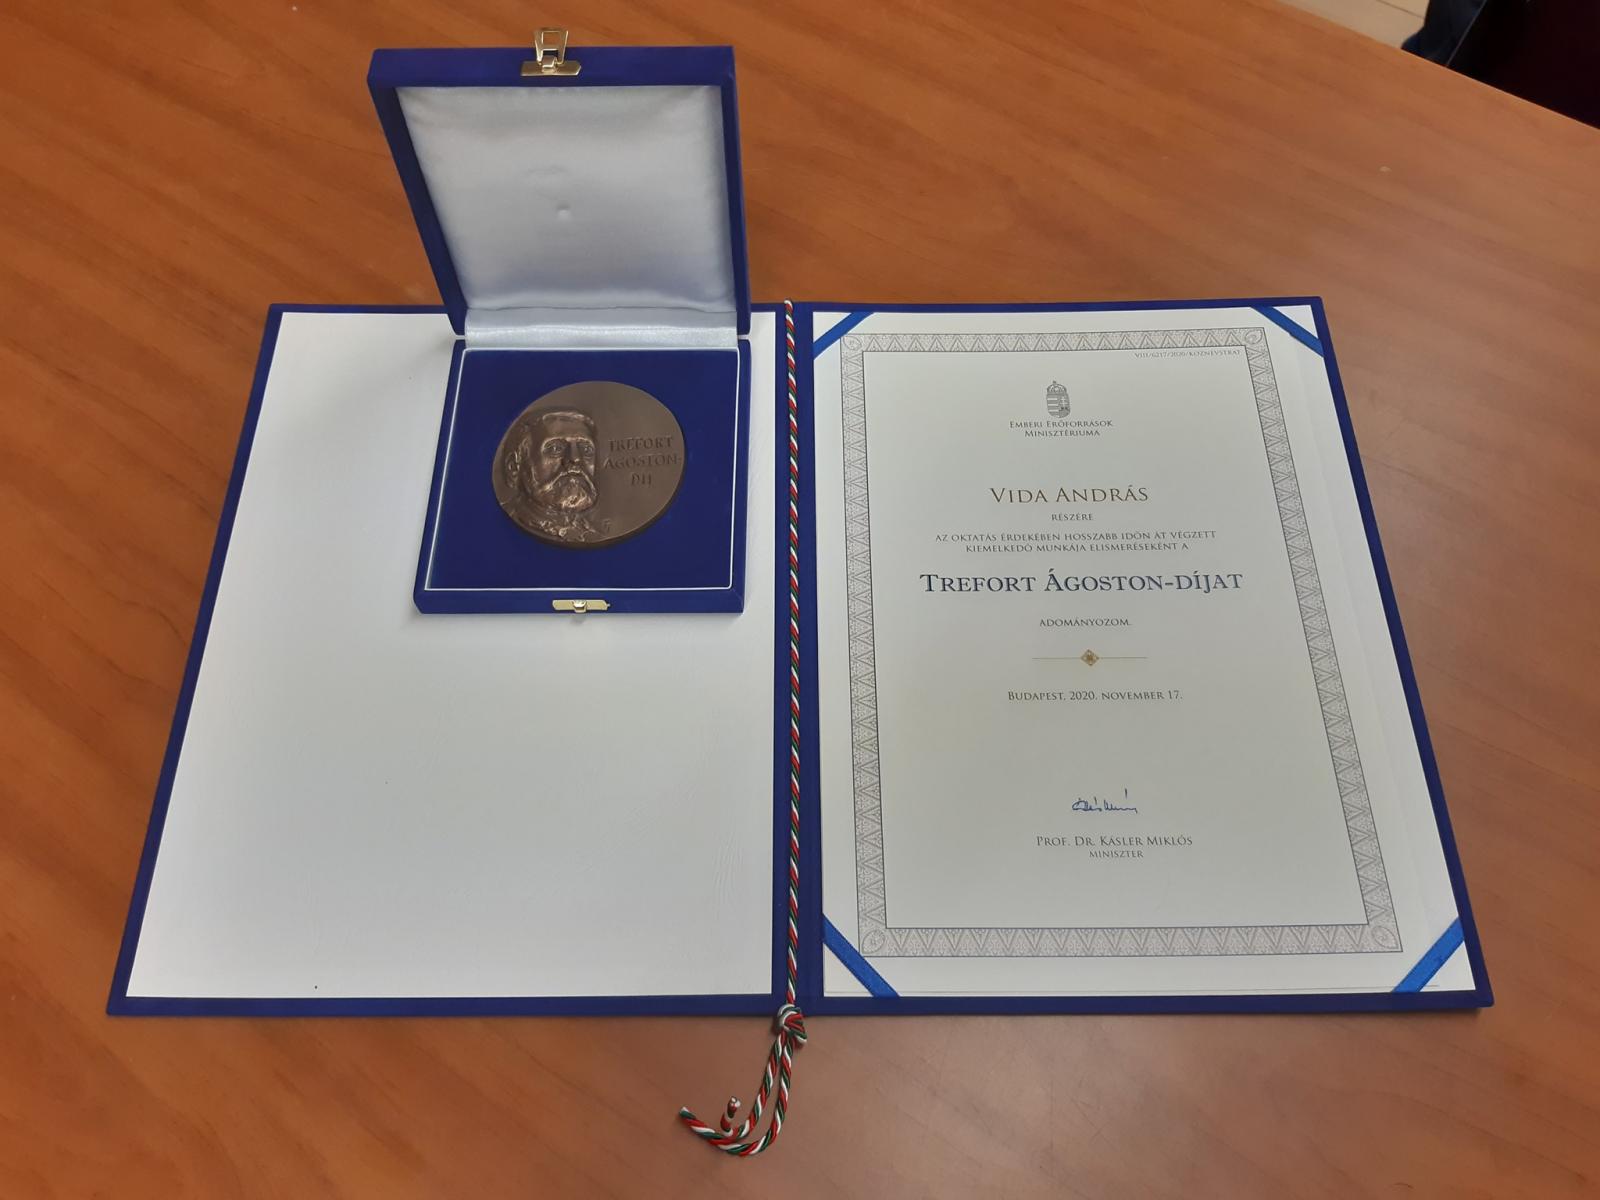 Trefort Ágoston-díjat kapott Vida András – Forrás: Herczeg Tamás